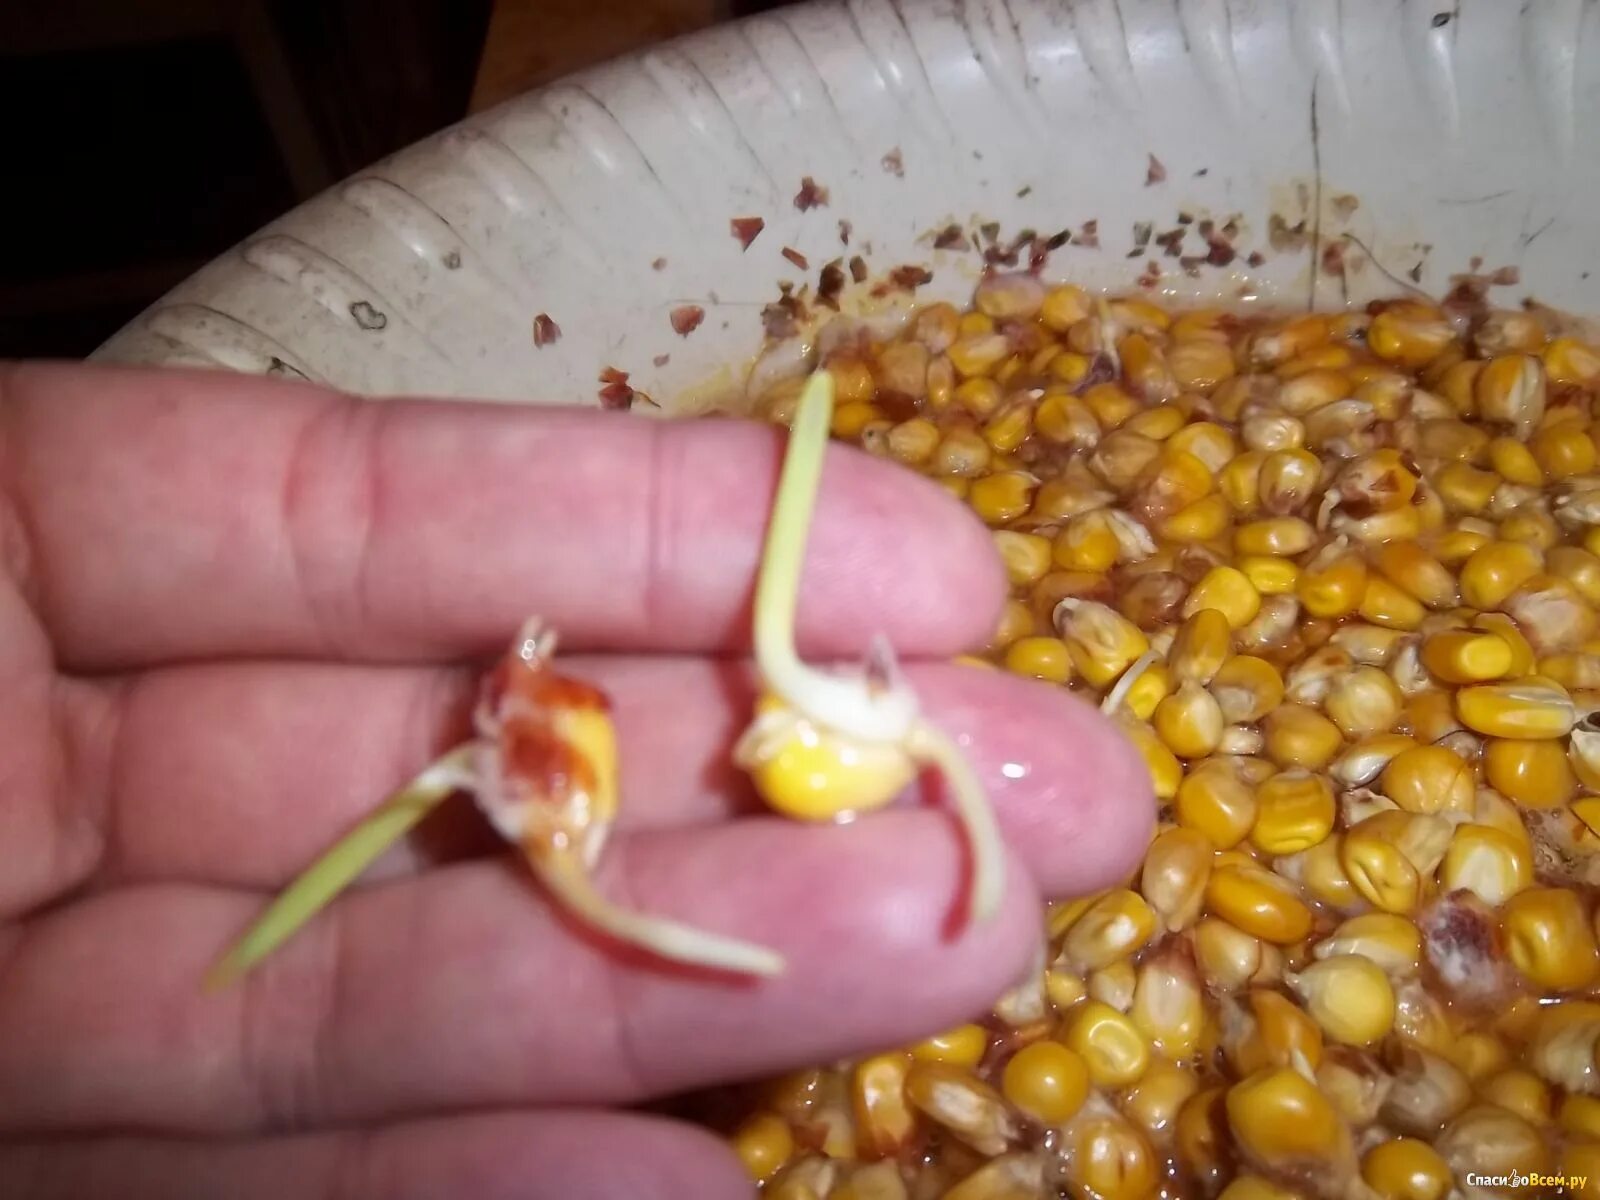 Надо ли проращивать семена перед посадкой. Прорастание семян кукурузы. Пророщенные семена кукурузы. Пророщенная семечка кукурузы. Прорастить семена кукурузы.